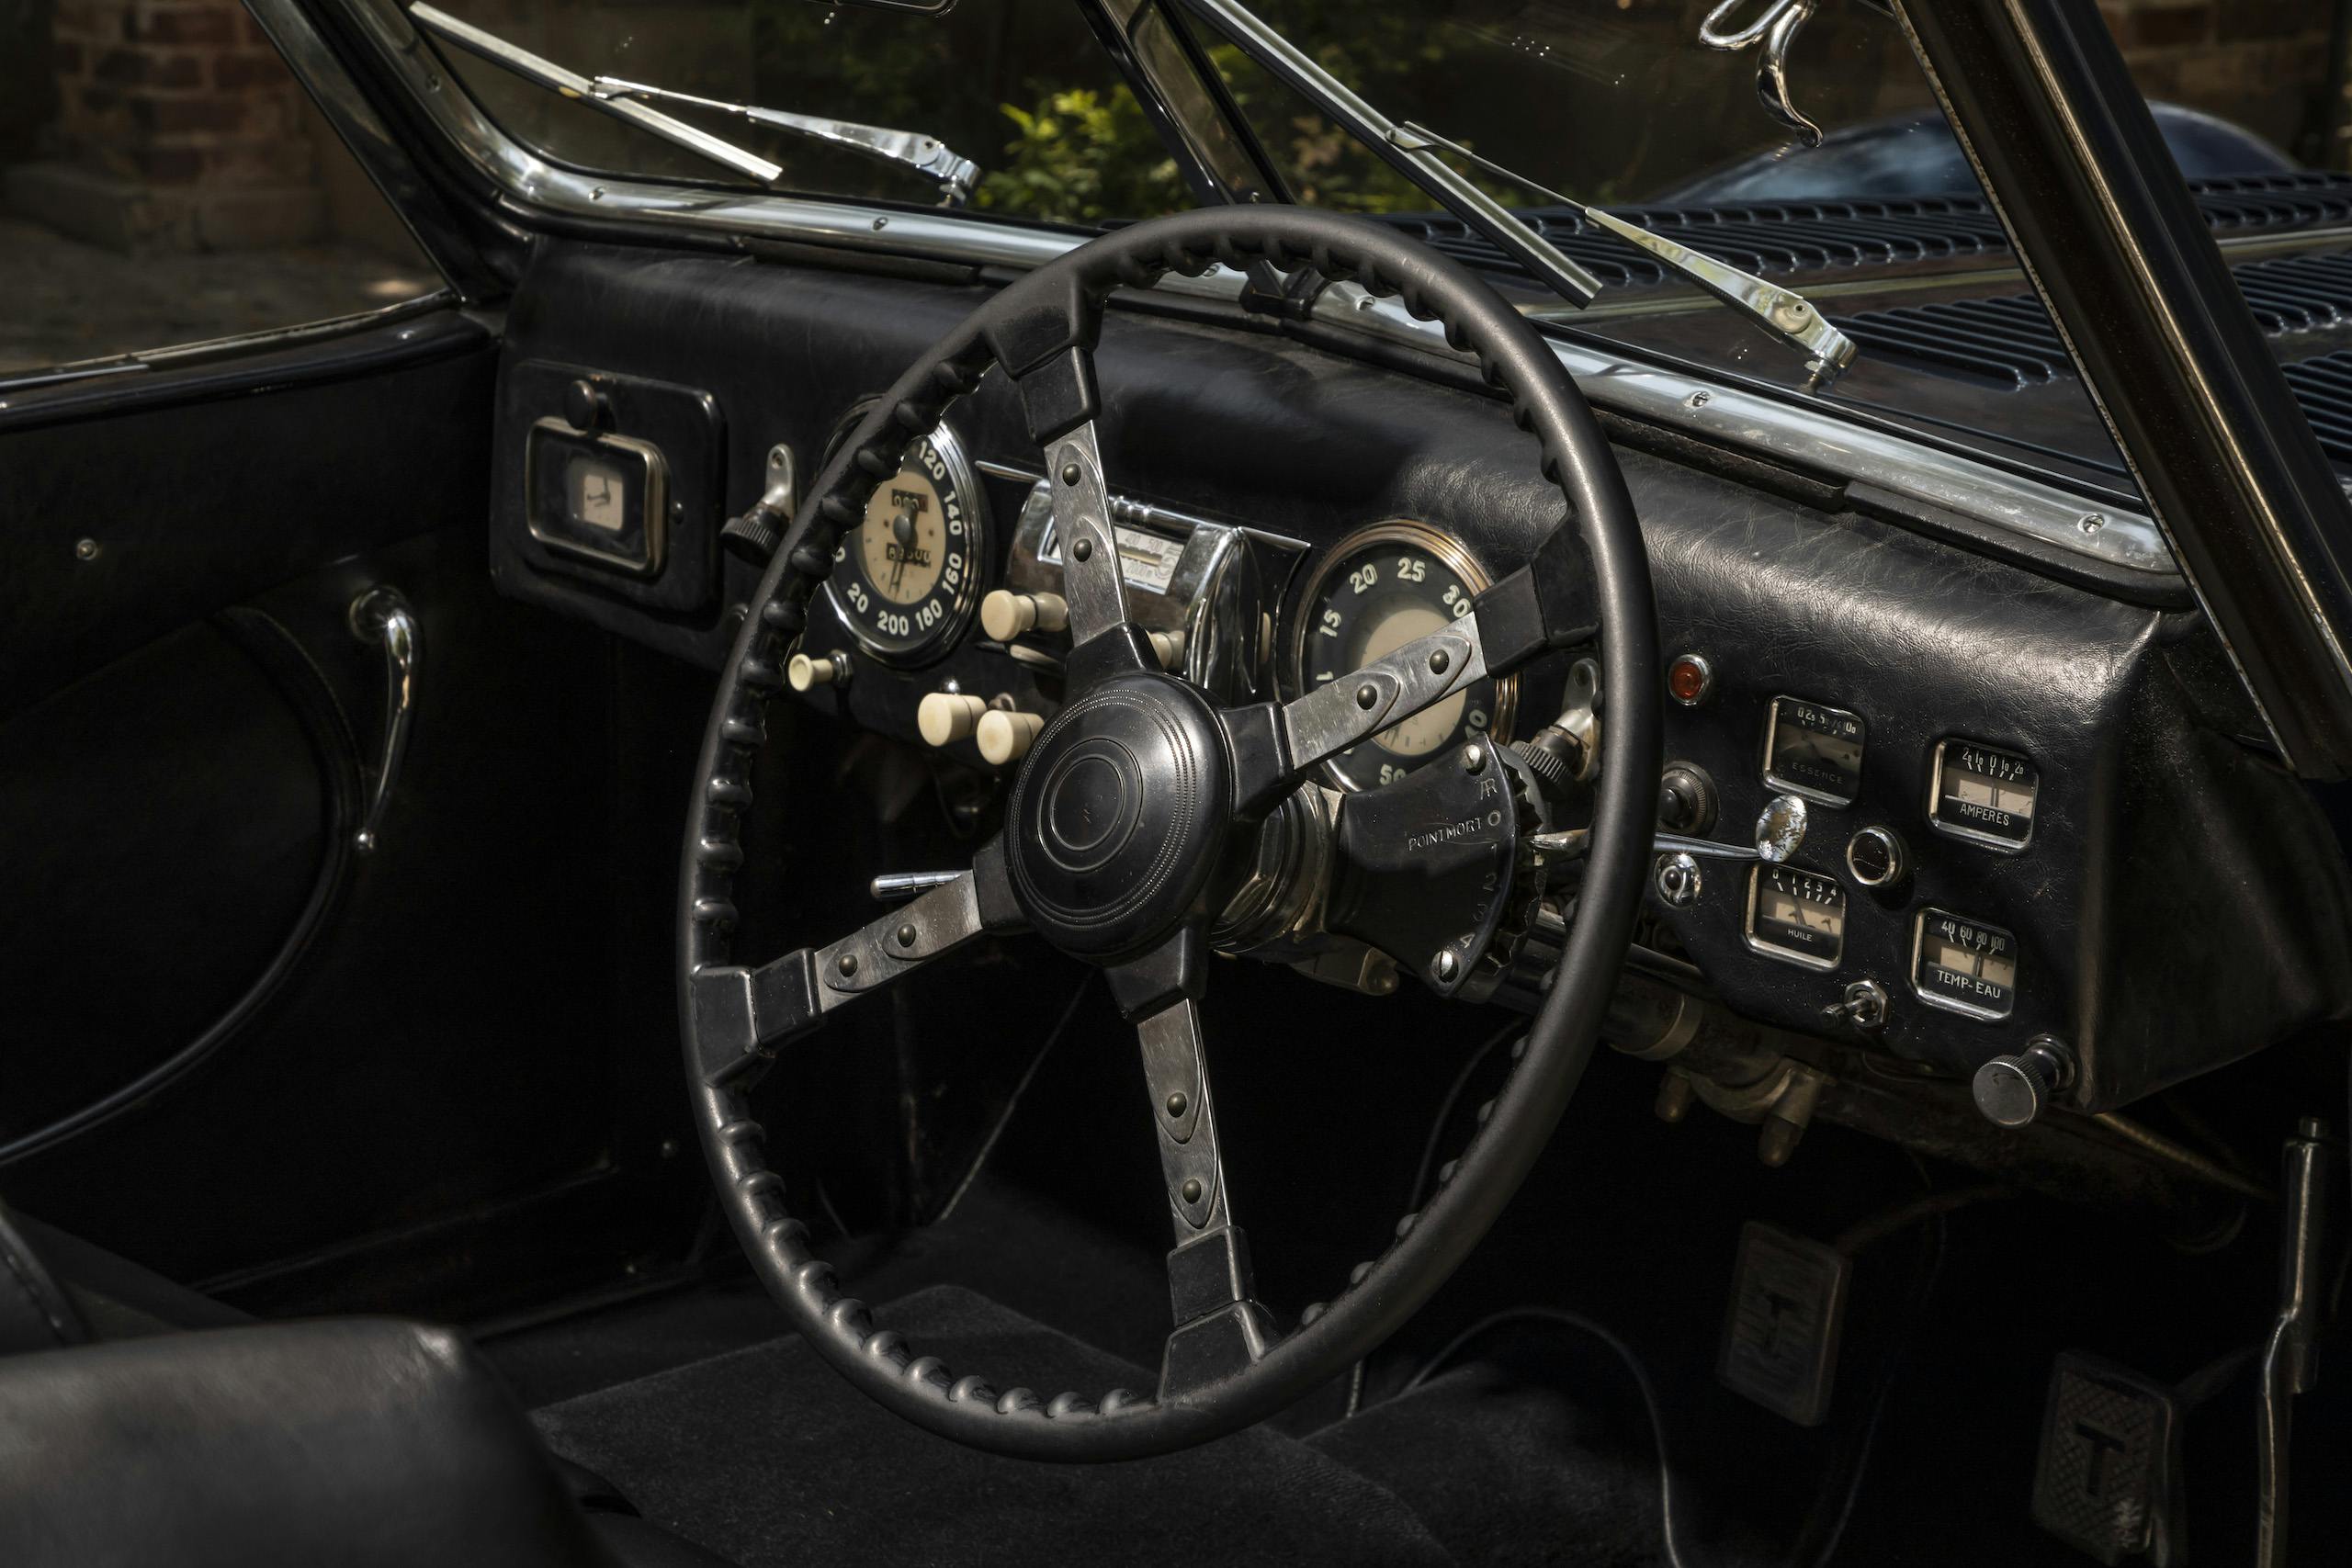 1949 Talbot-Lago T26 Grand Sport steering wheel